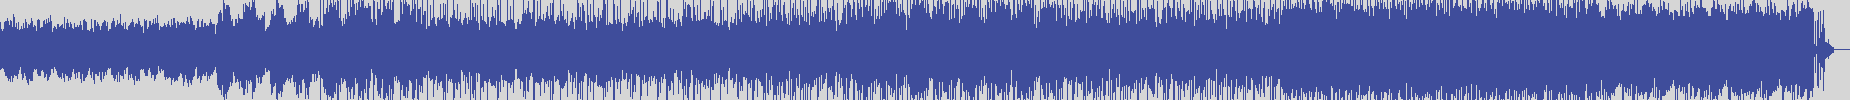 noclouds_chillout [NOC134] The Cotton Groove - Gava [Original Mix] audio wave form